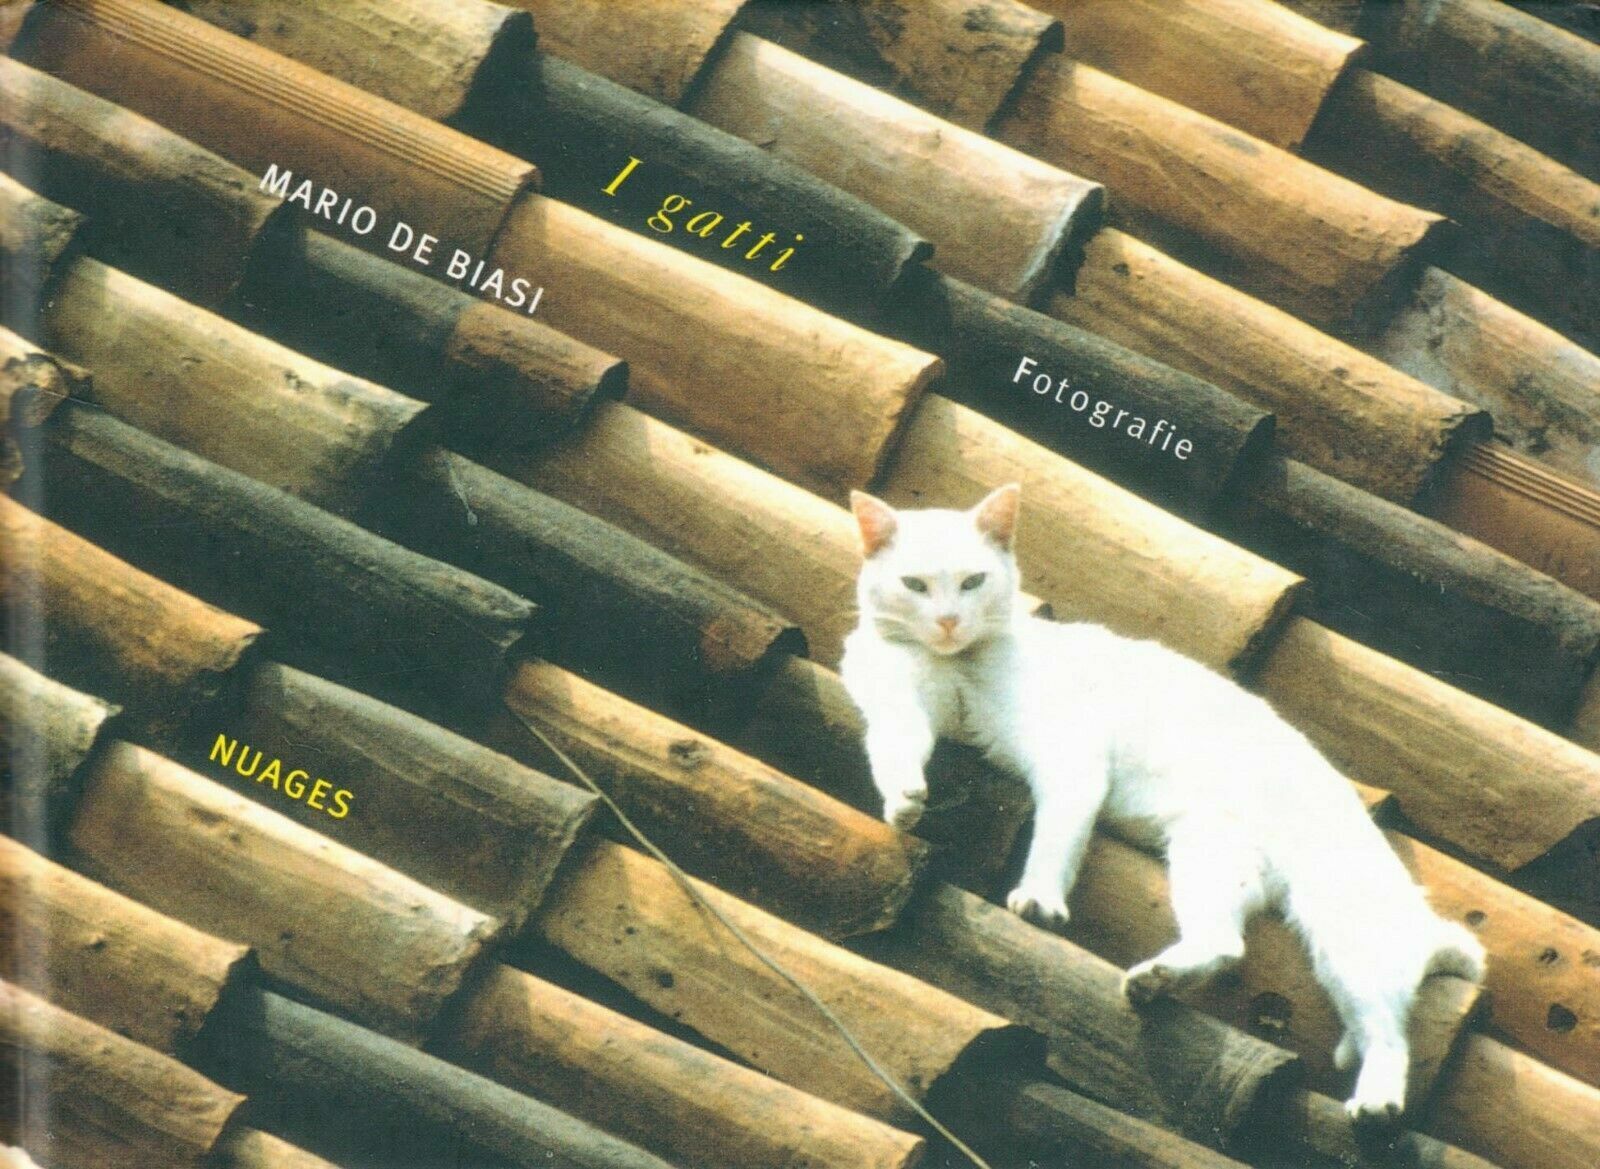 I gatti, fotografie di Mario De Biasi,  2006,  Nuages